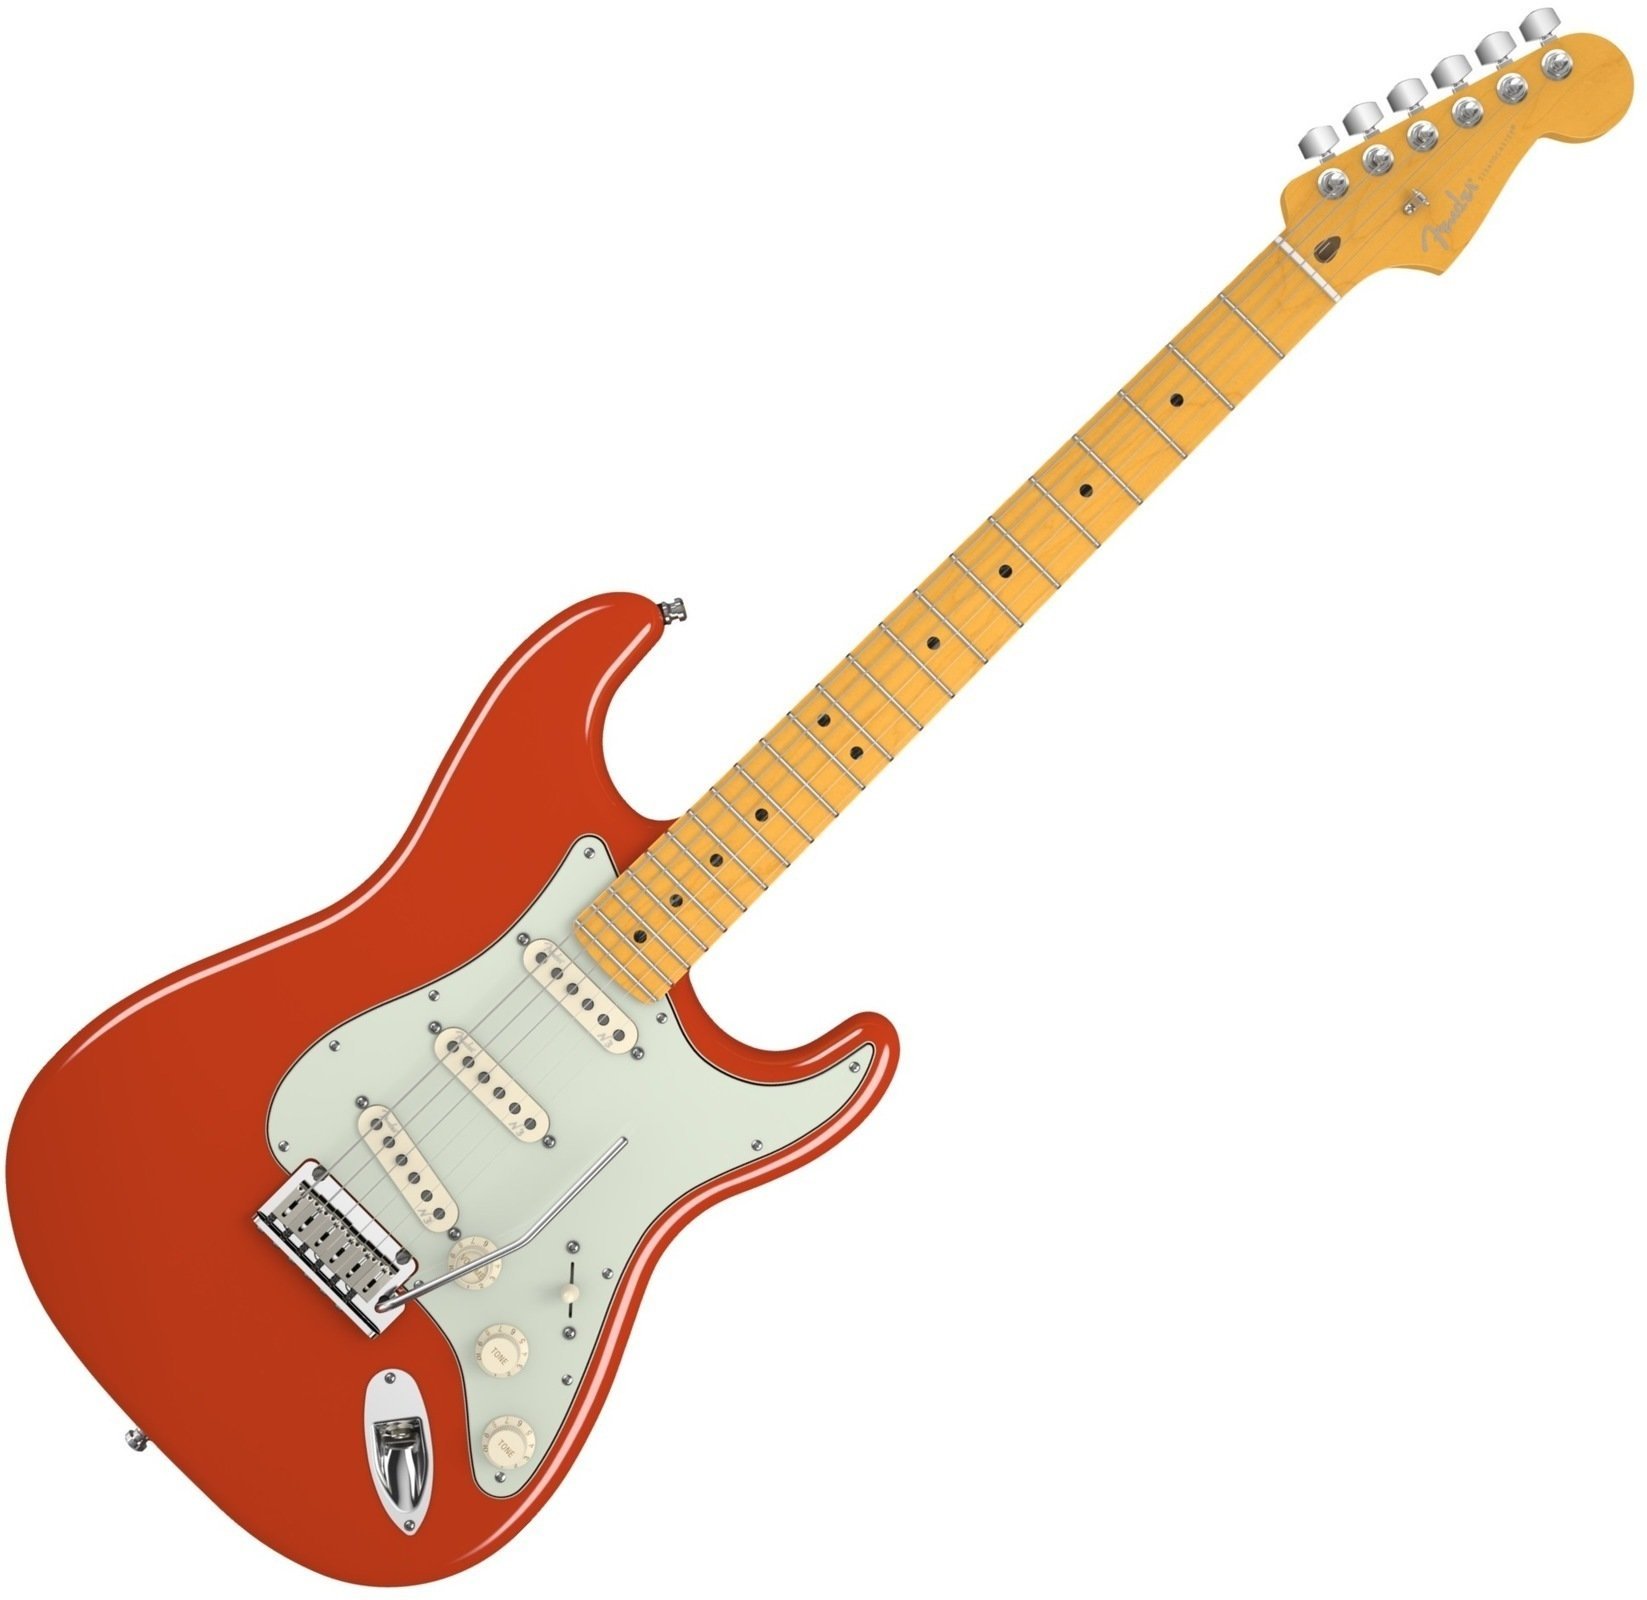 Ηλεκτρική Κιθάρα Fender American Deluxe Stratocaster V Neck, Maple Fingerboard, Fiesta Red